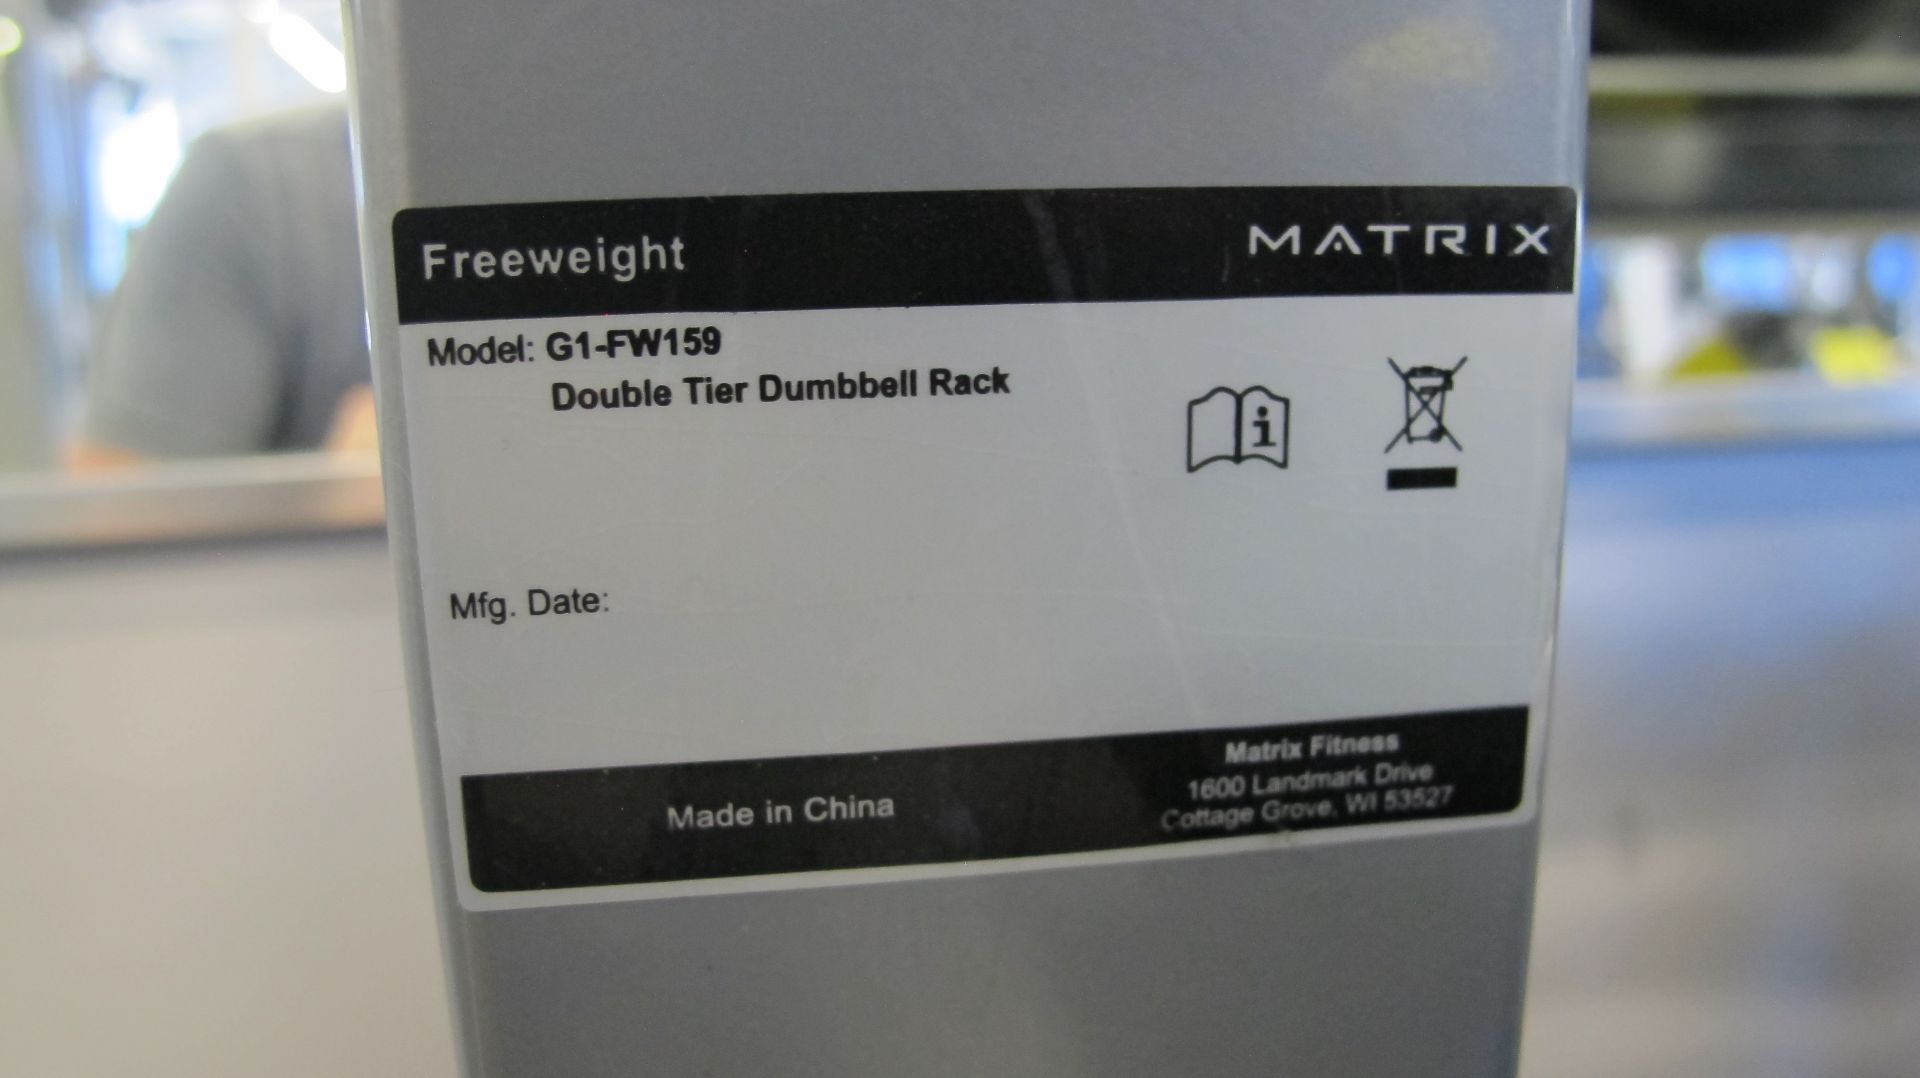 MATRIX G1-FW159 2-Tier Dumbbell Rack, S/N:G1FW159DE1109GB017 - Image 3 of 4